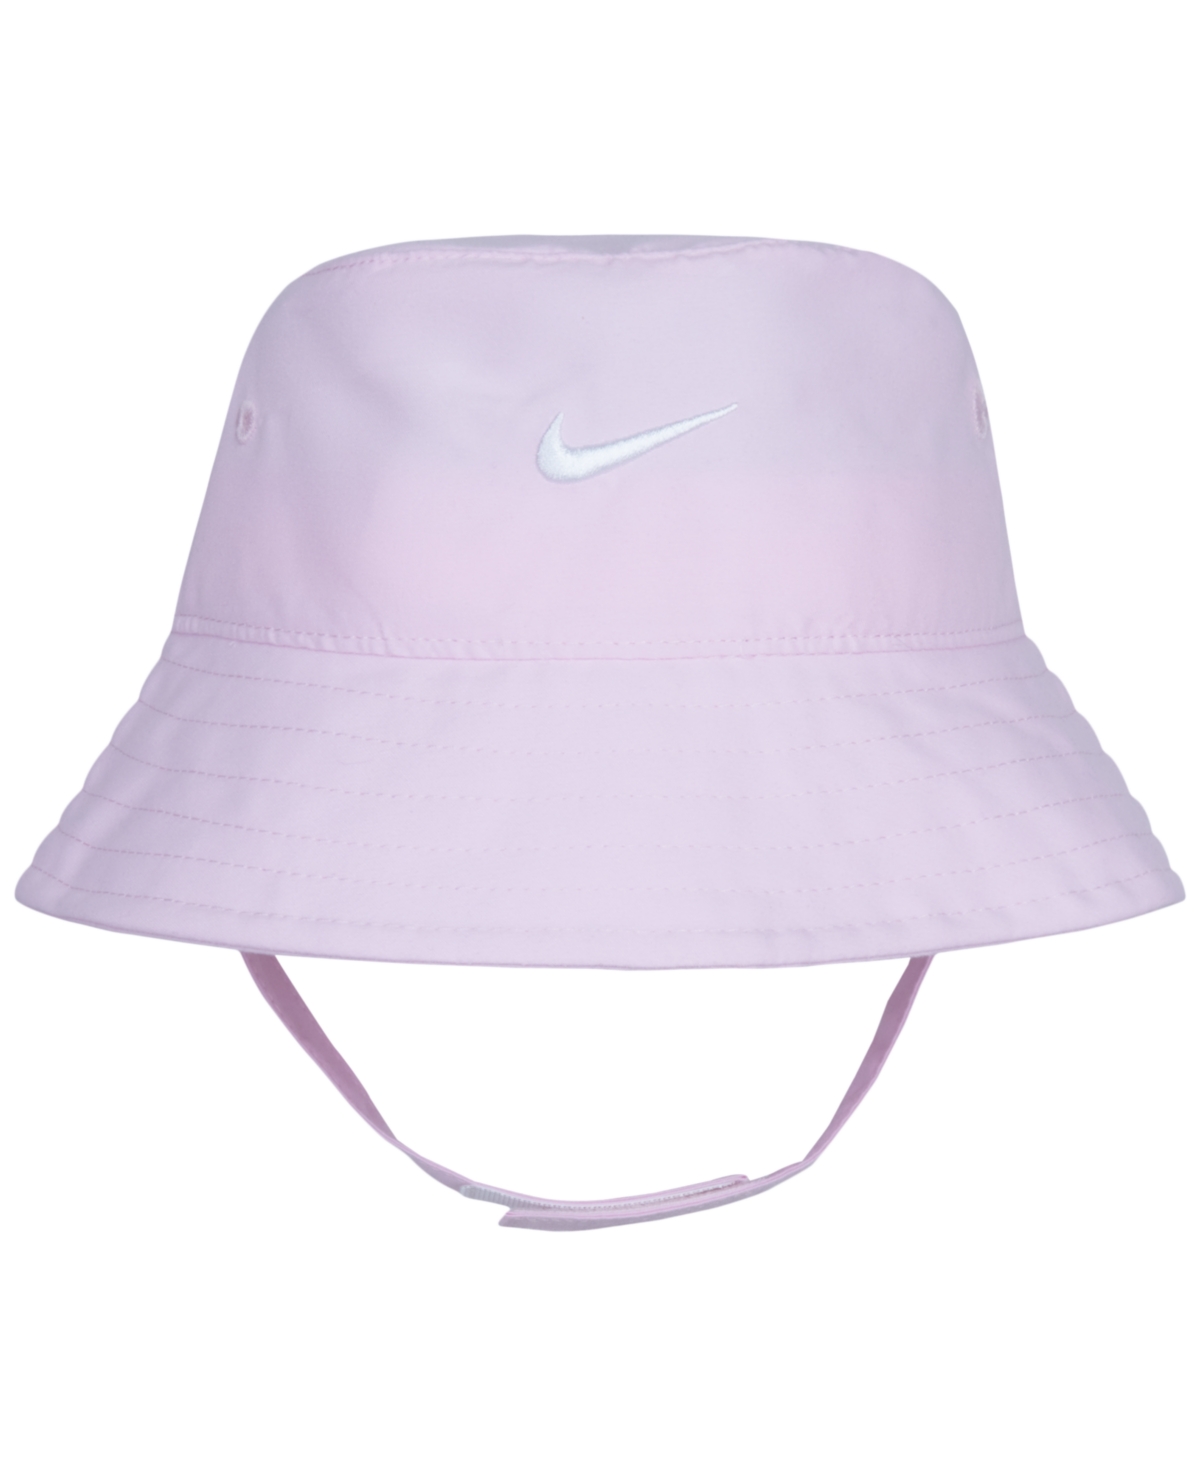 Nike Baby Girls Upf40+ Futura Bucket Hat In Pink Foam